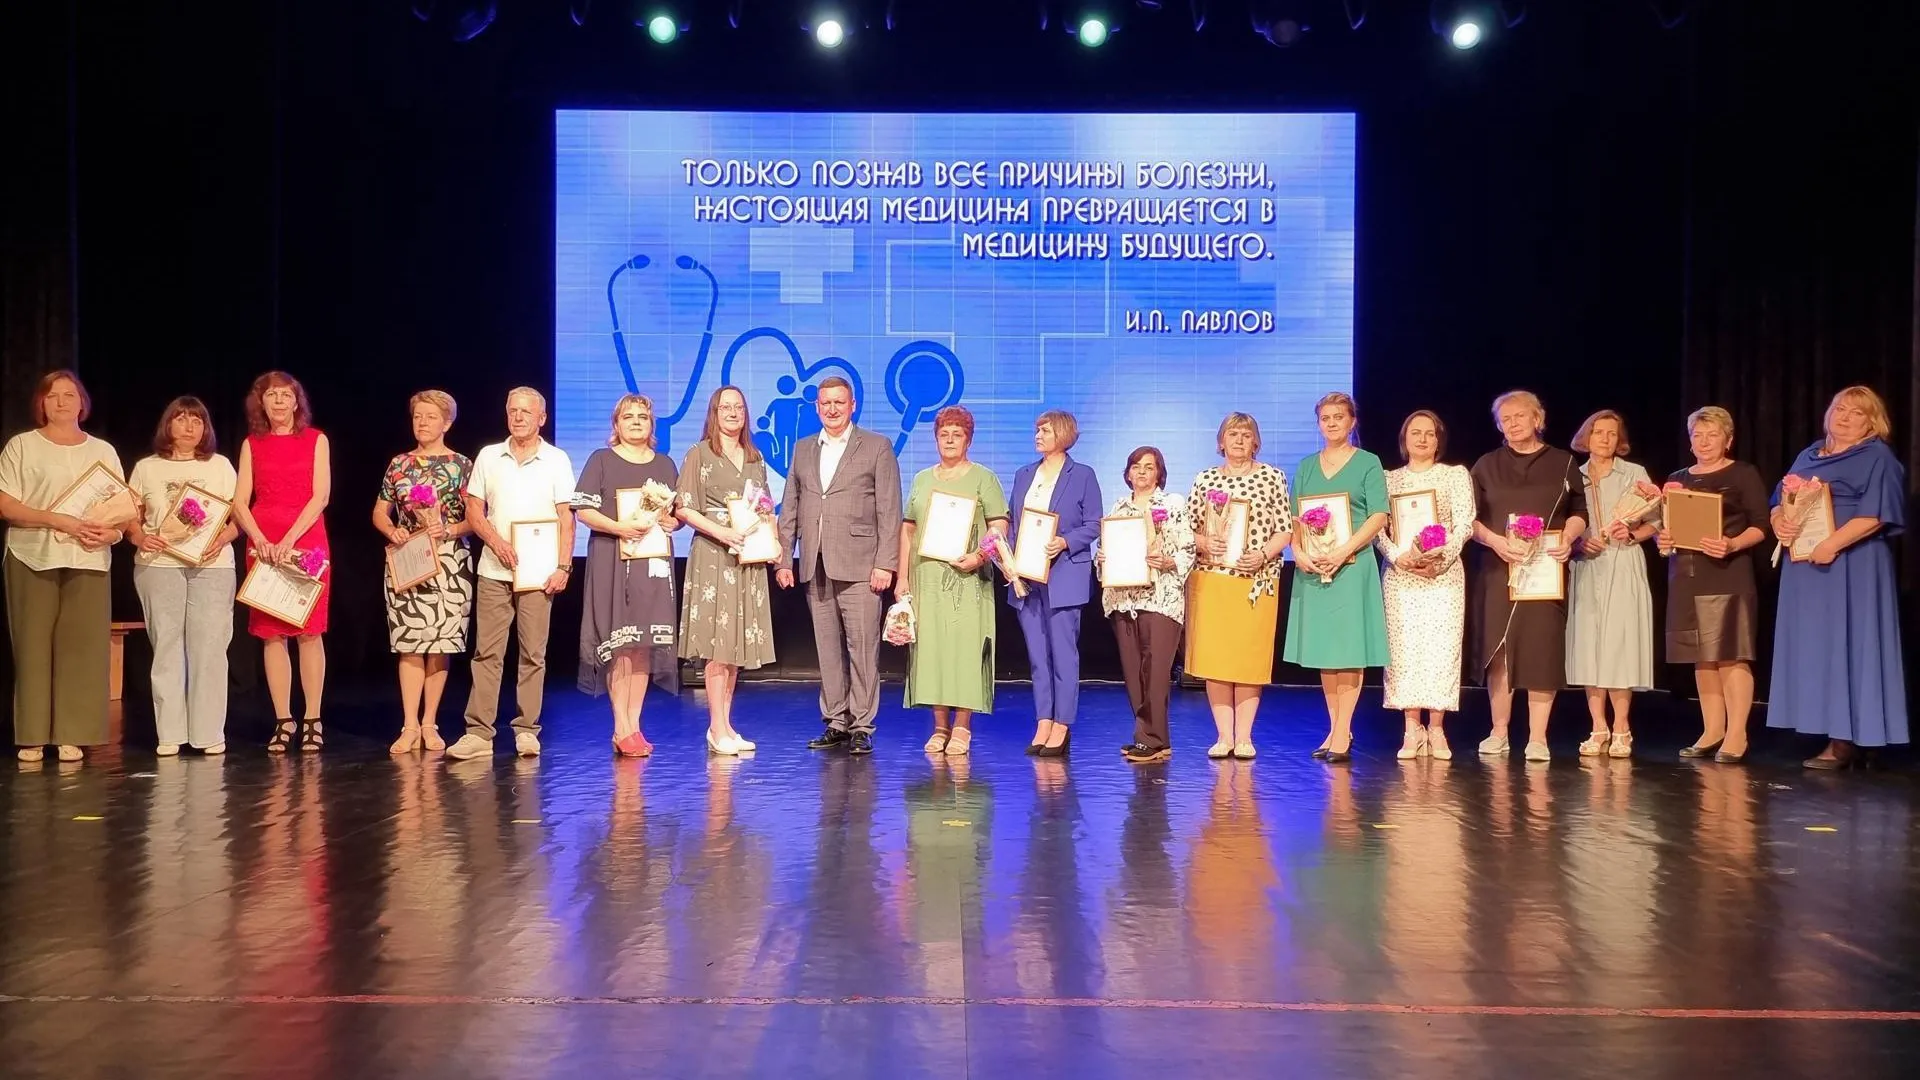 Глава округа Луховицы вручил федеральные и областные награды медикам в честь профессионального праздника